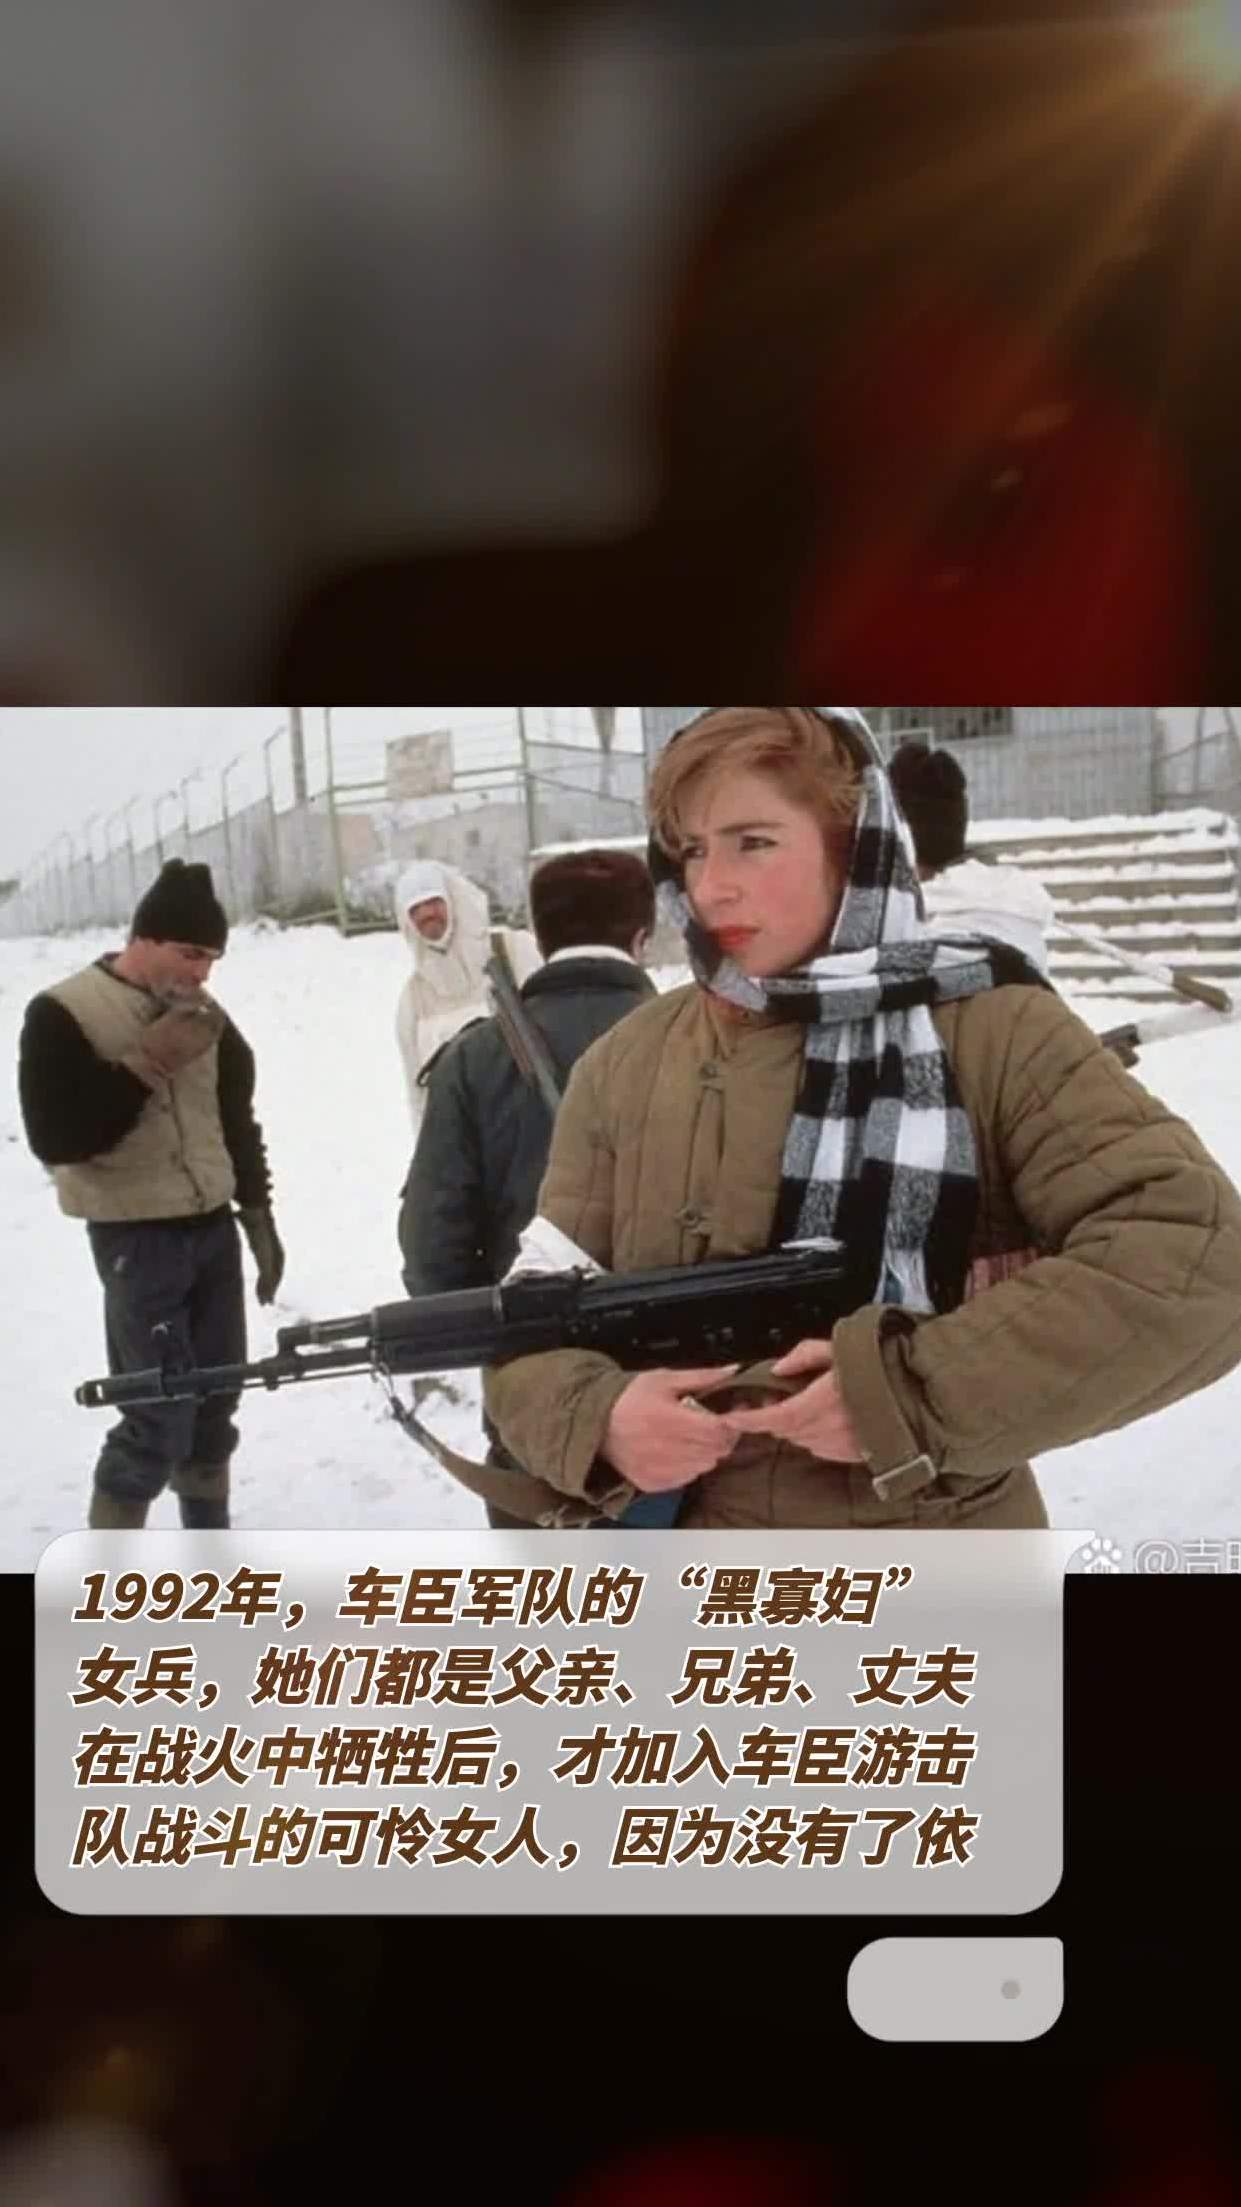 1992年,车臣军队的黑寡妇女兵,她们都是父亲,兄弟,丈夫在战火中牺牲